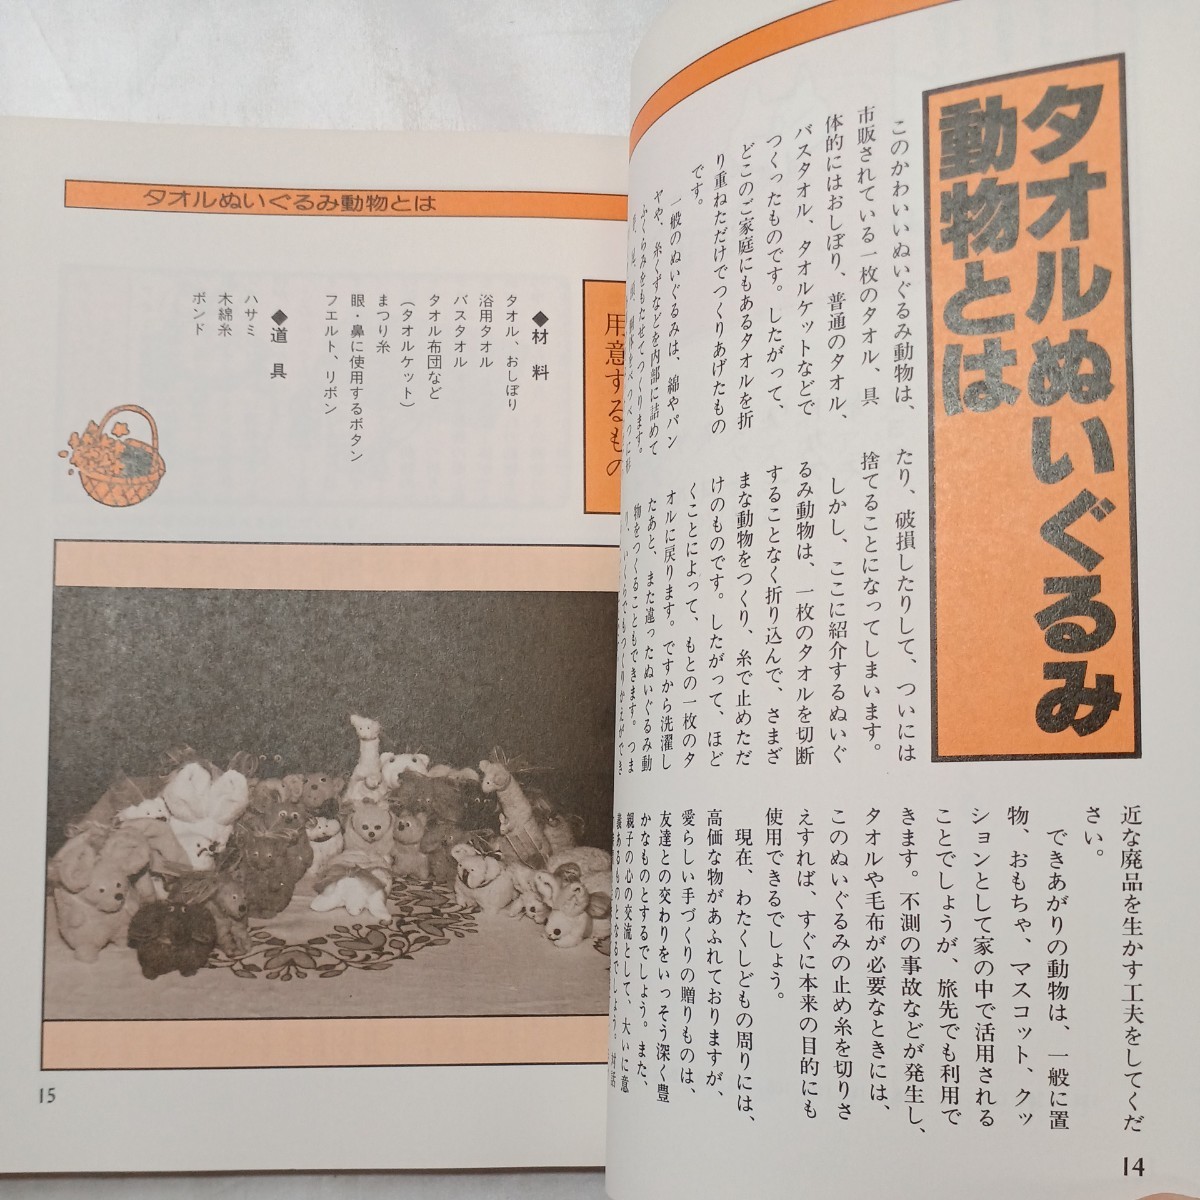 zaa-495♪タオルでつくるぬいぐるみ動物 ハサミを使わず簡単にできる 　服部 まさ子(著)　 池田書店 (1985年6月10日)